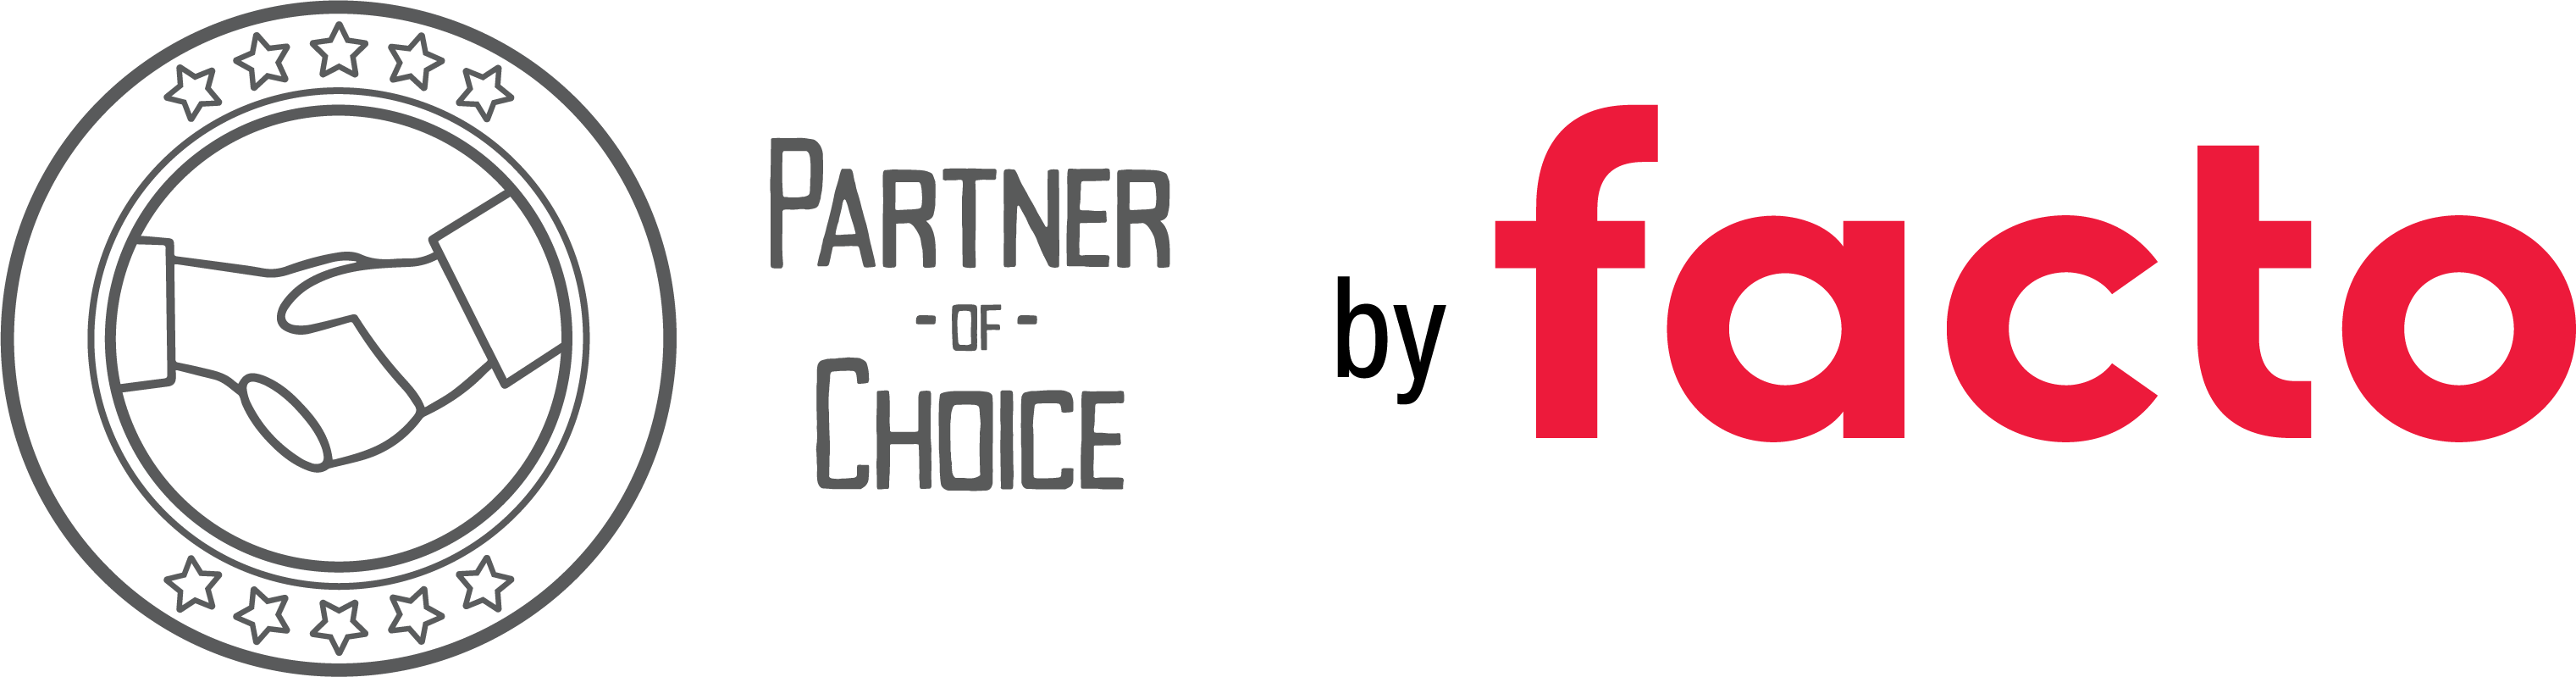 FACTO Partner of Choice 2020 Mercateo